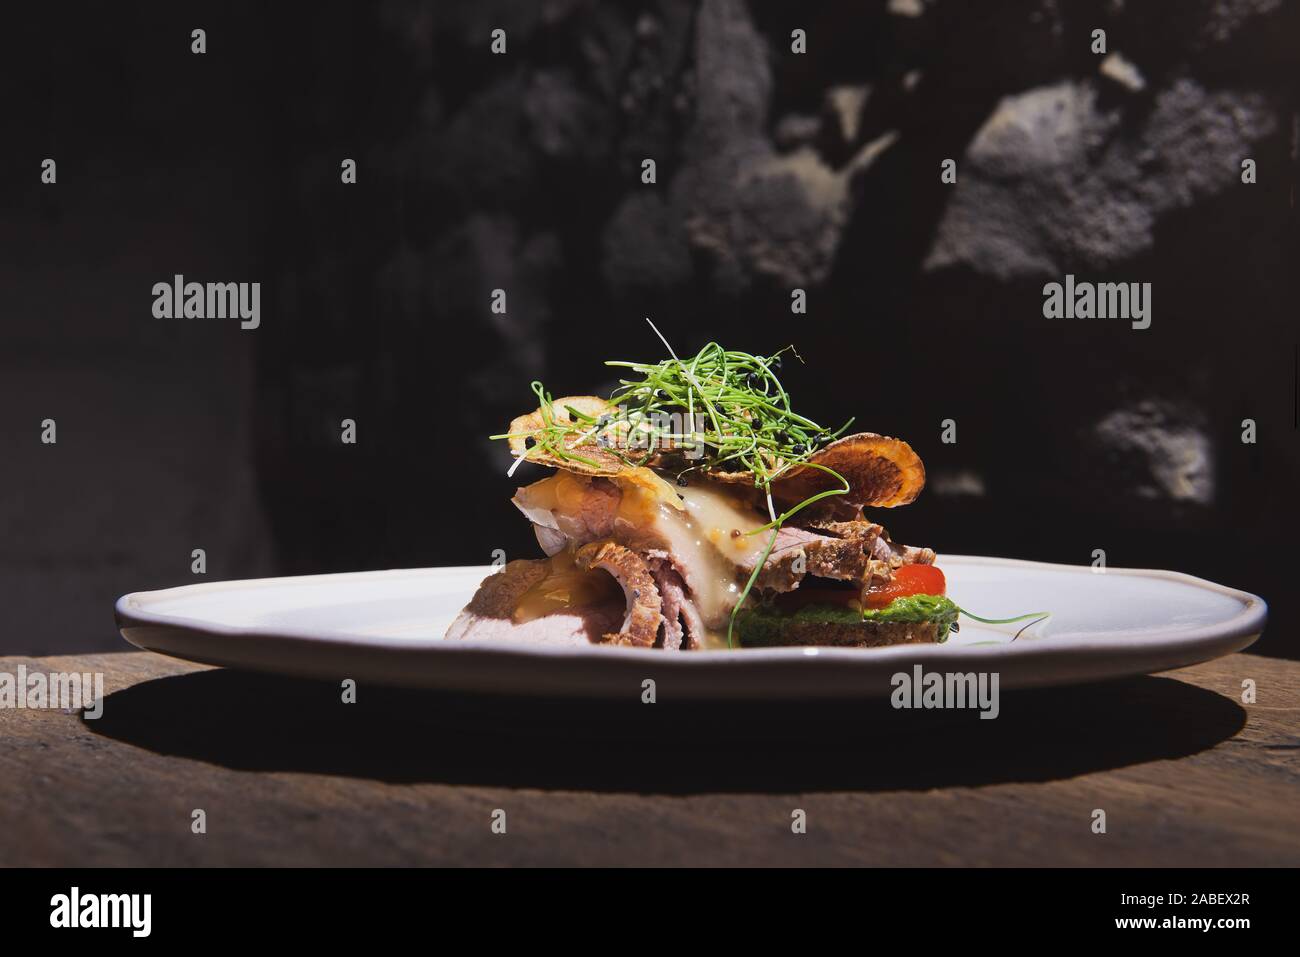 Schön appetitlich Gericht mit gebratenem Fleisch und Chips auf dem weißen Teller im Loft Stil Restaurant. Fusion-küche. Stockfoto